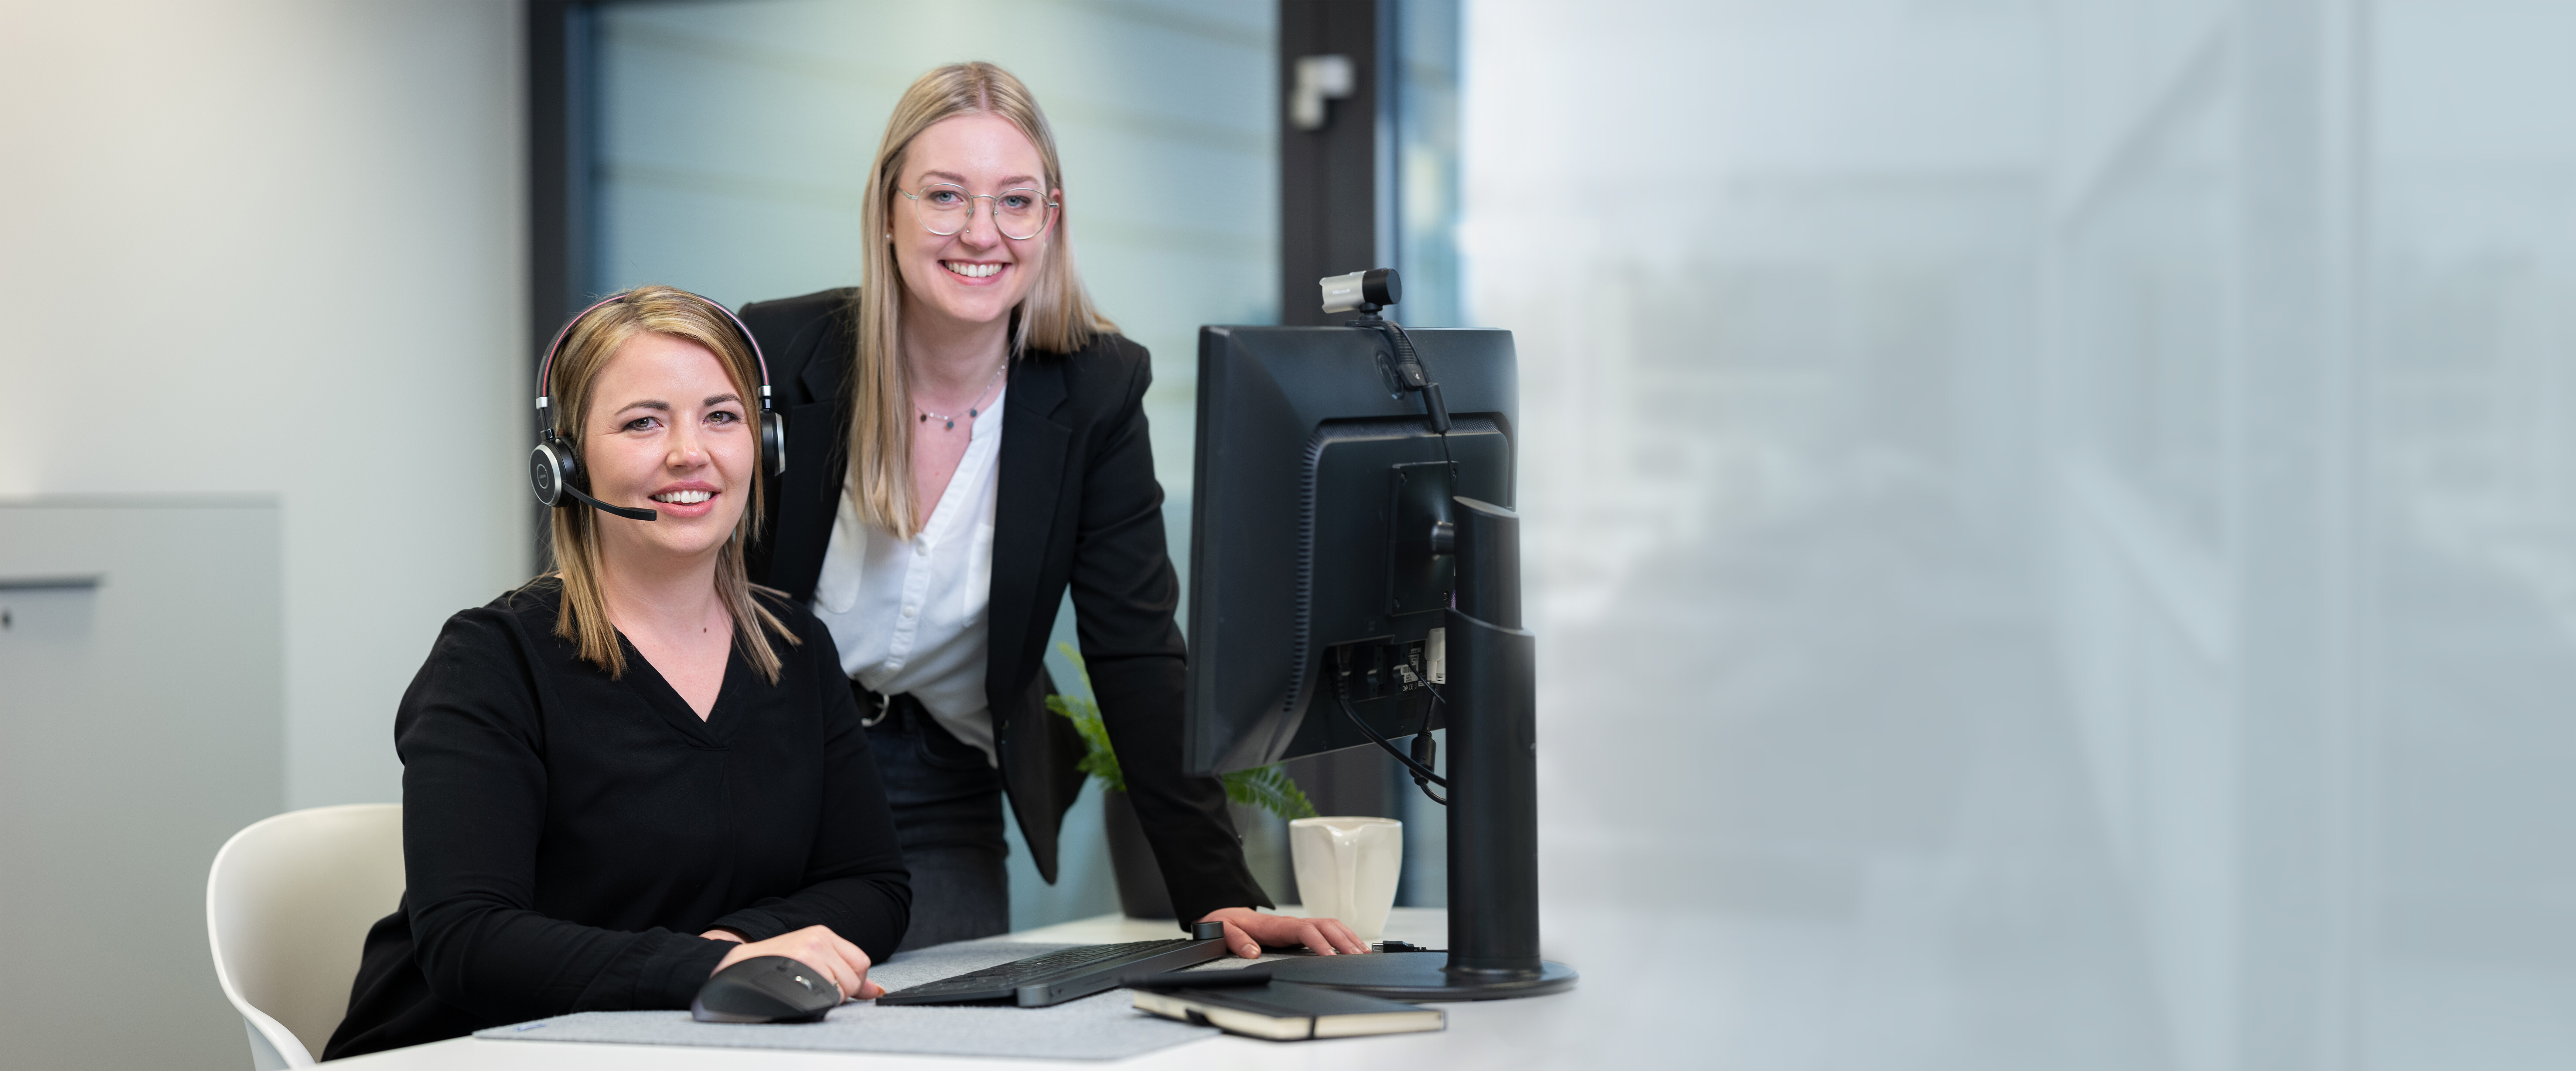 Unsere lächelnden Mitarbeiterinnen Laura mit Headset und Larissa daneben stehend in einer alltäglichen Arbeitssituation gemeinsam vor dem Computerbildschirm. | © Bamboo Health Care GmbH